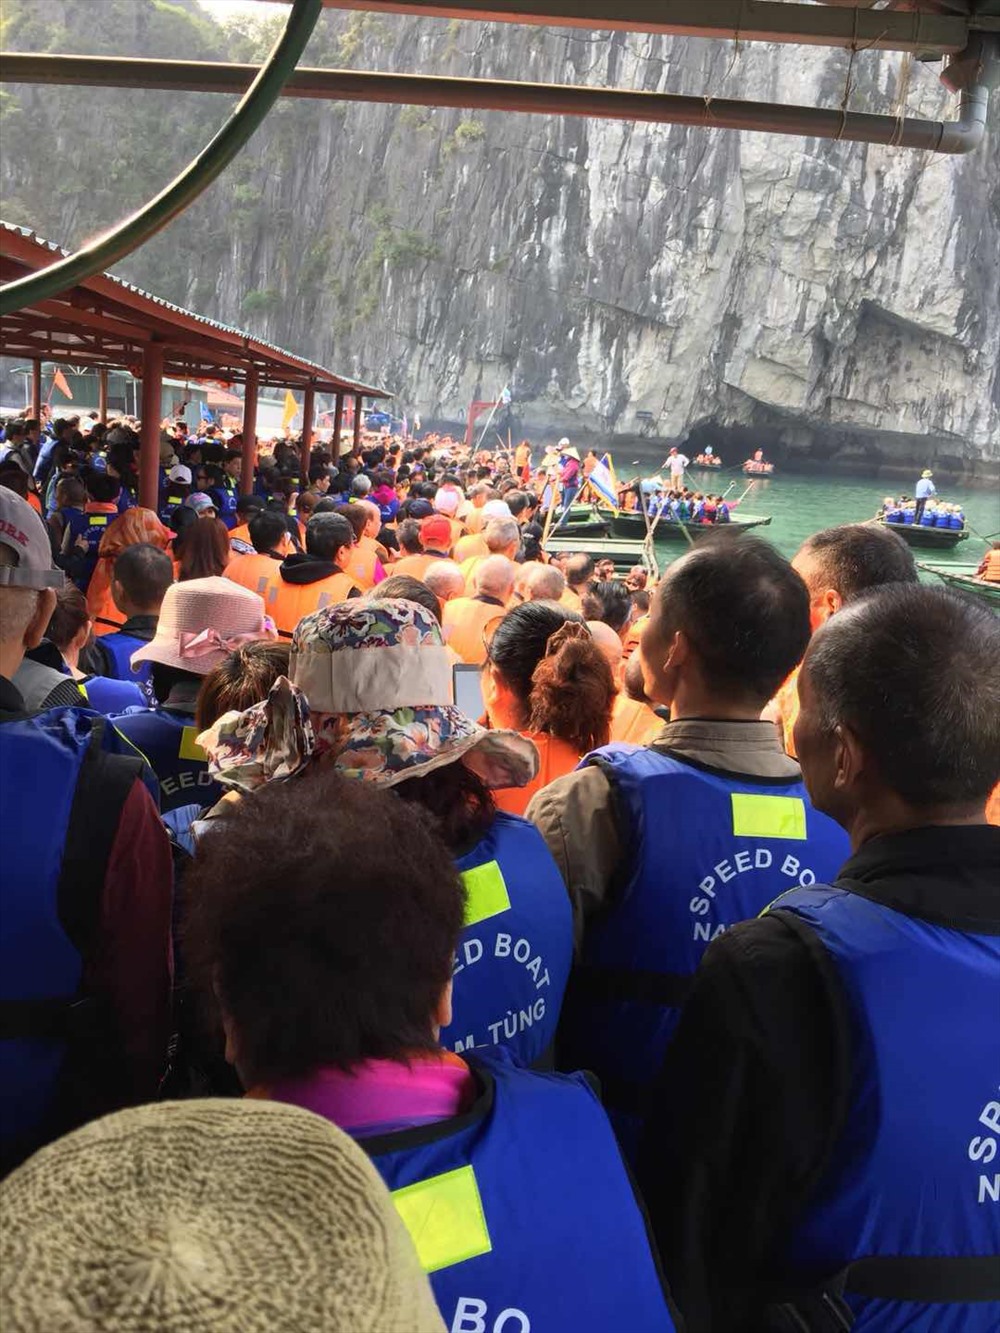 Du khách Trung Quốc đợi thuyền nan để vào thăm hang Luồn, sau khi được xuồng cao tốc của Cty TNHH MTV Nam Tùng đưa từ khu vực Cát Lán đến. Ảnh: Nguyễn Hùng